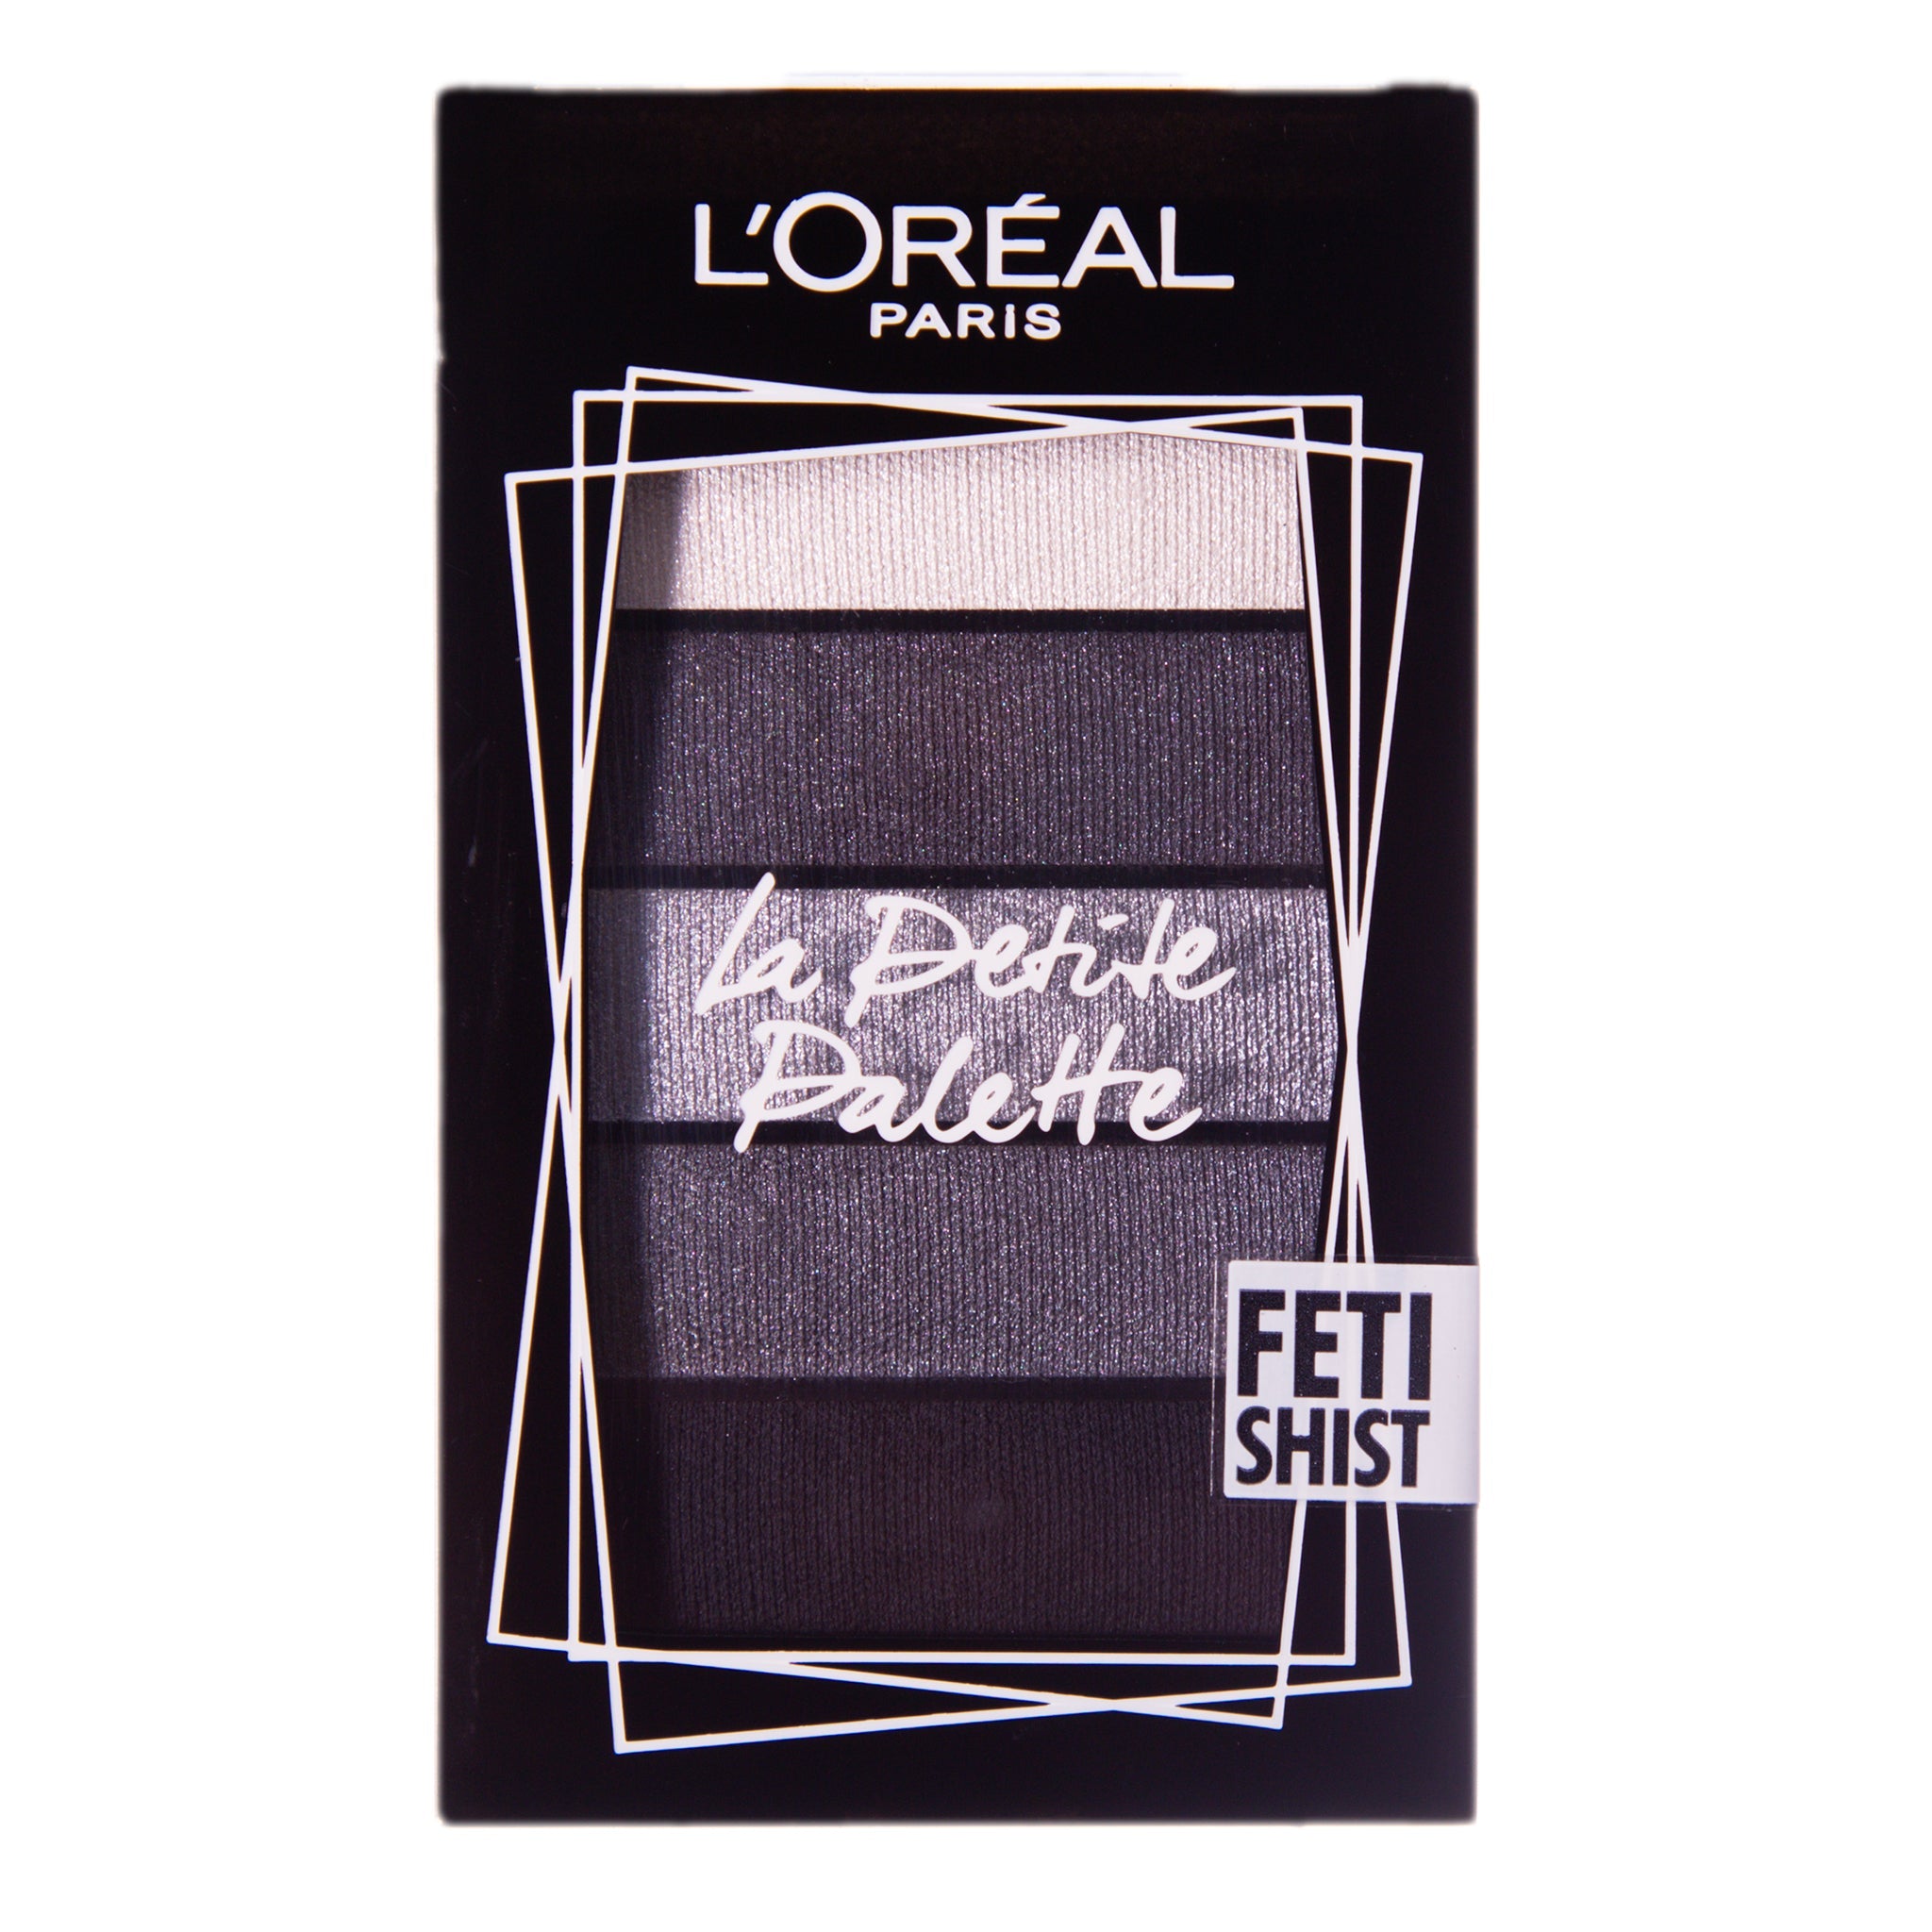 [B-GRADE] L'Oreal Paris Mini Eyeshadow Palette - Fetishist